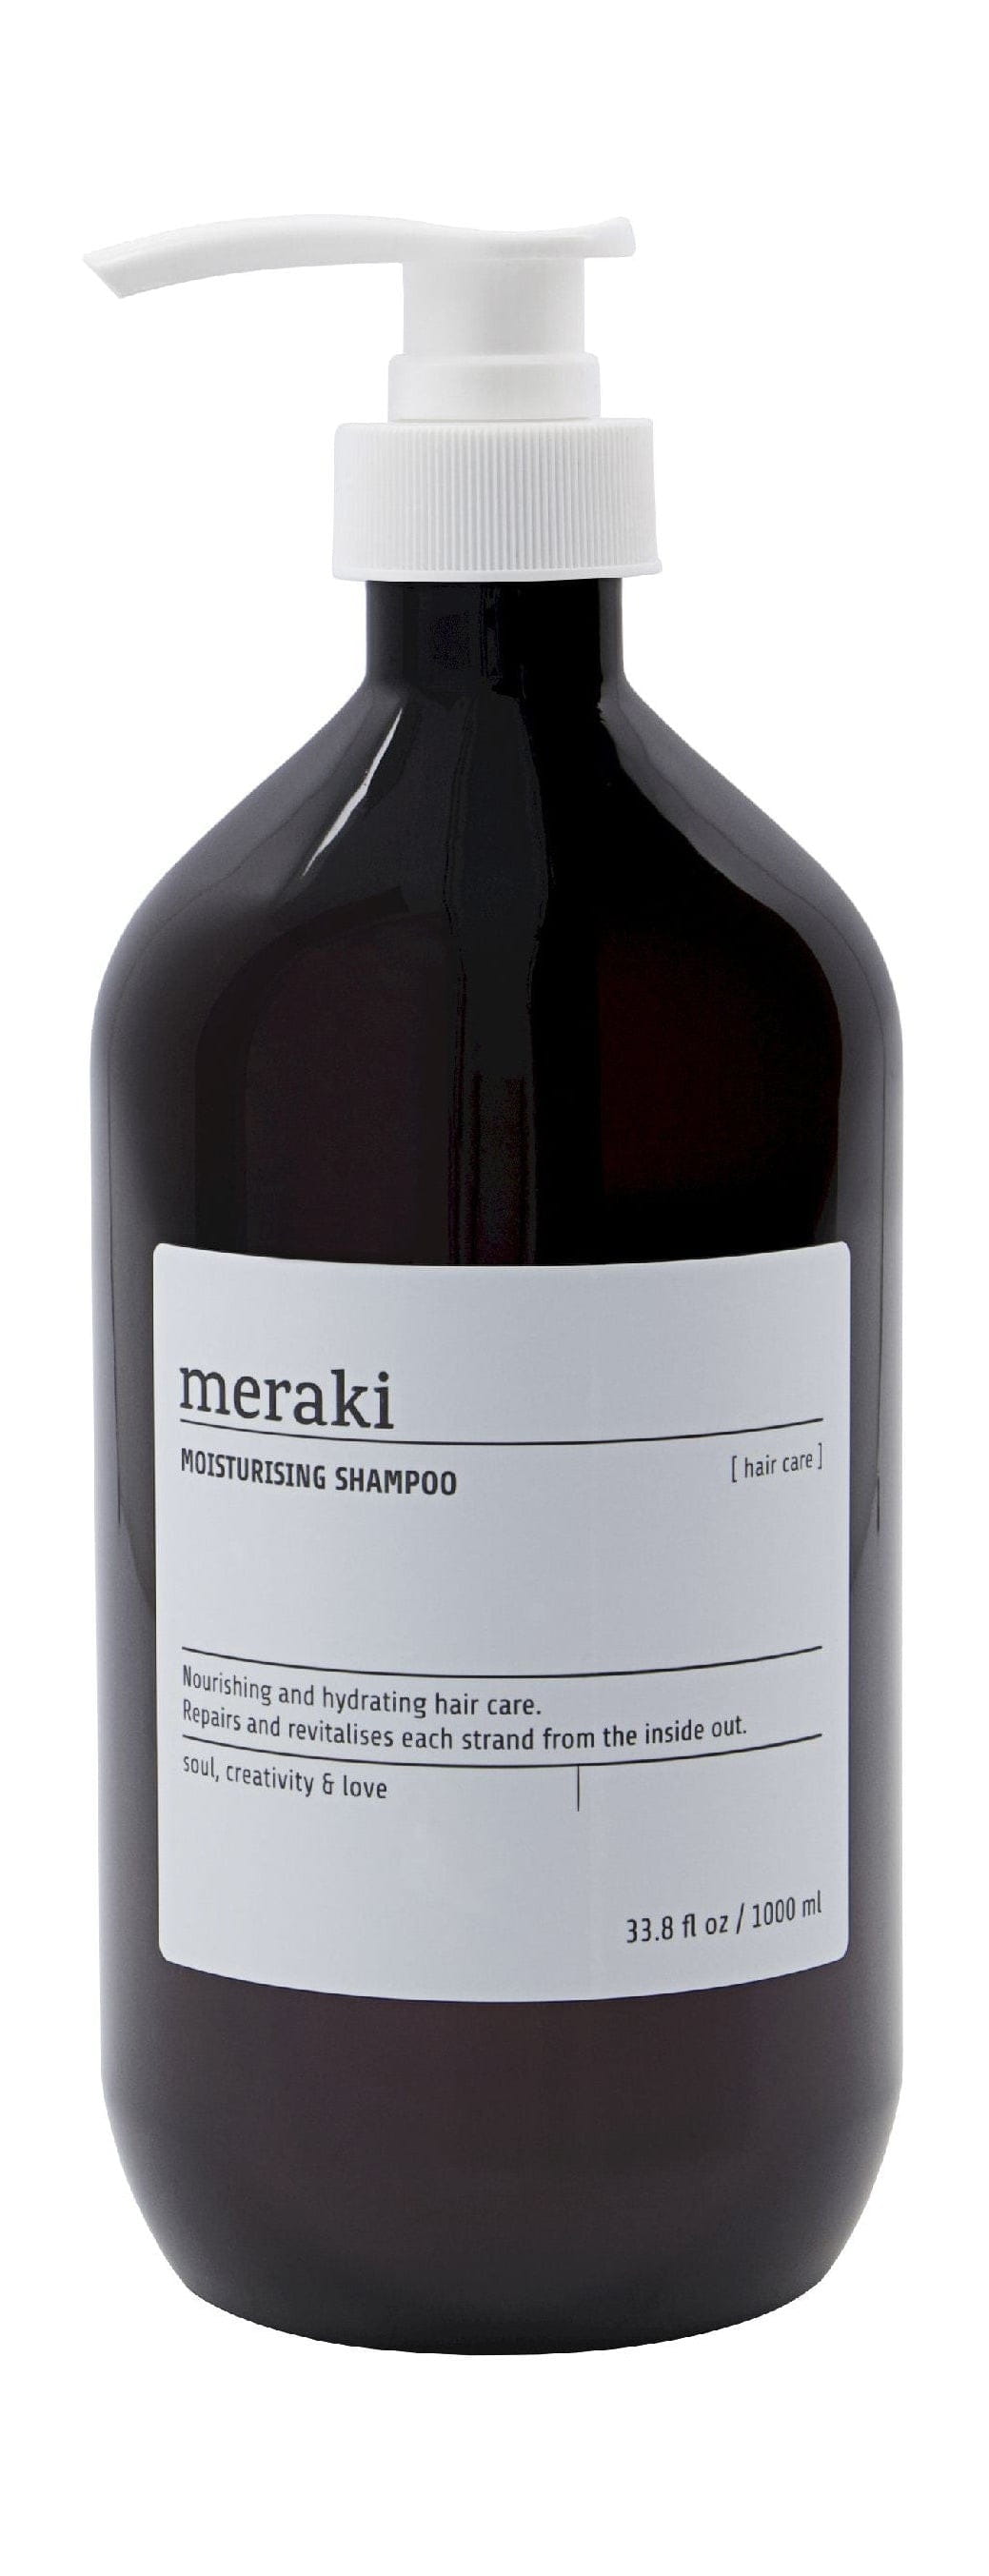 Meraki Moisturizing Shampoo 1 L